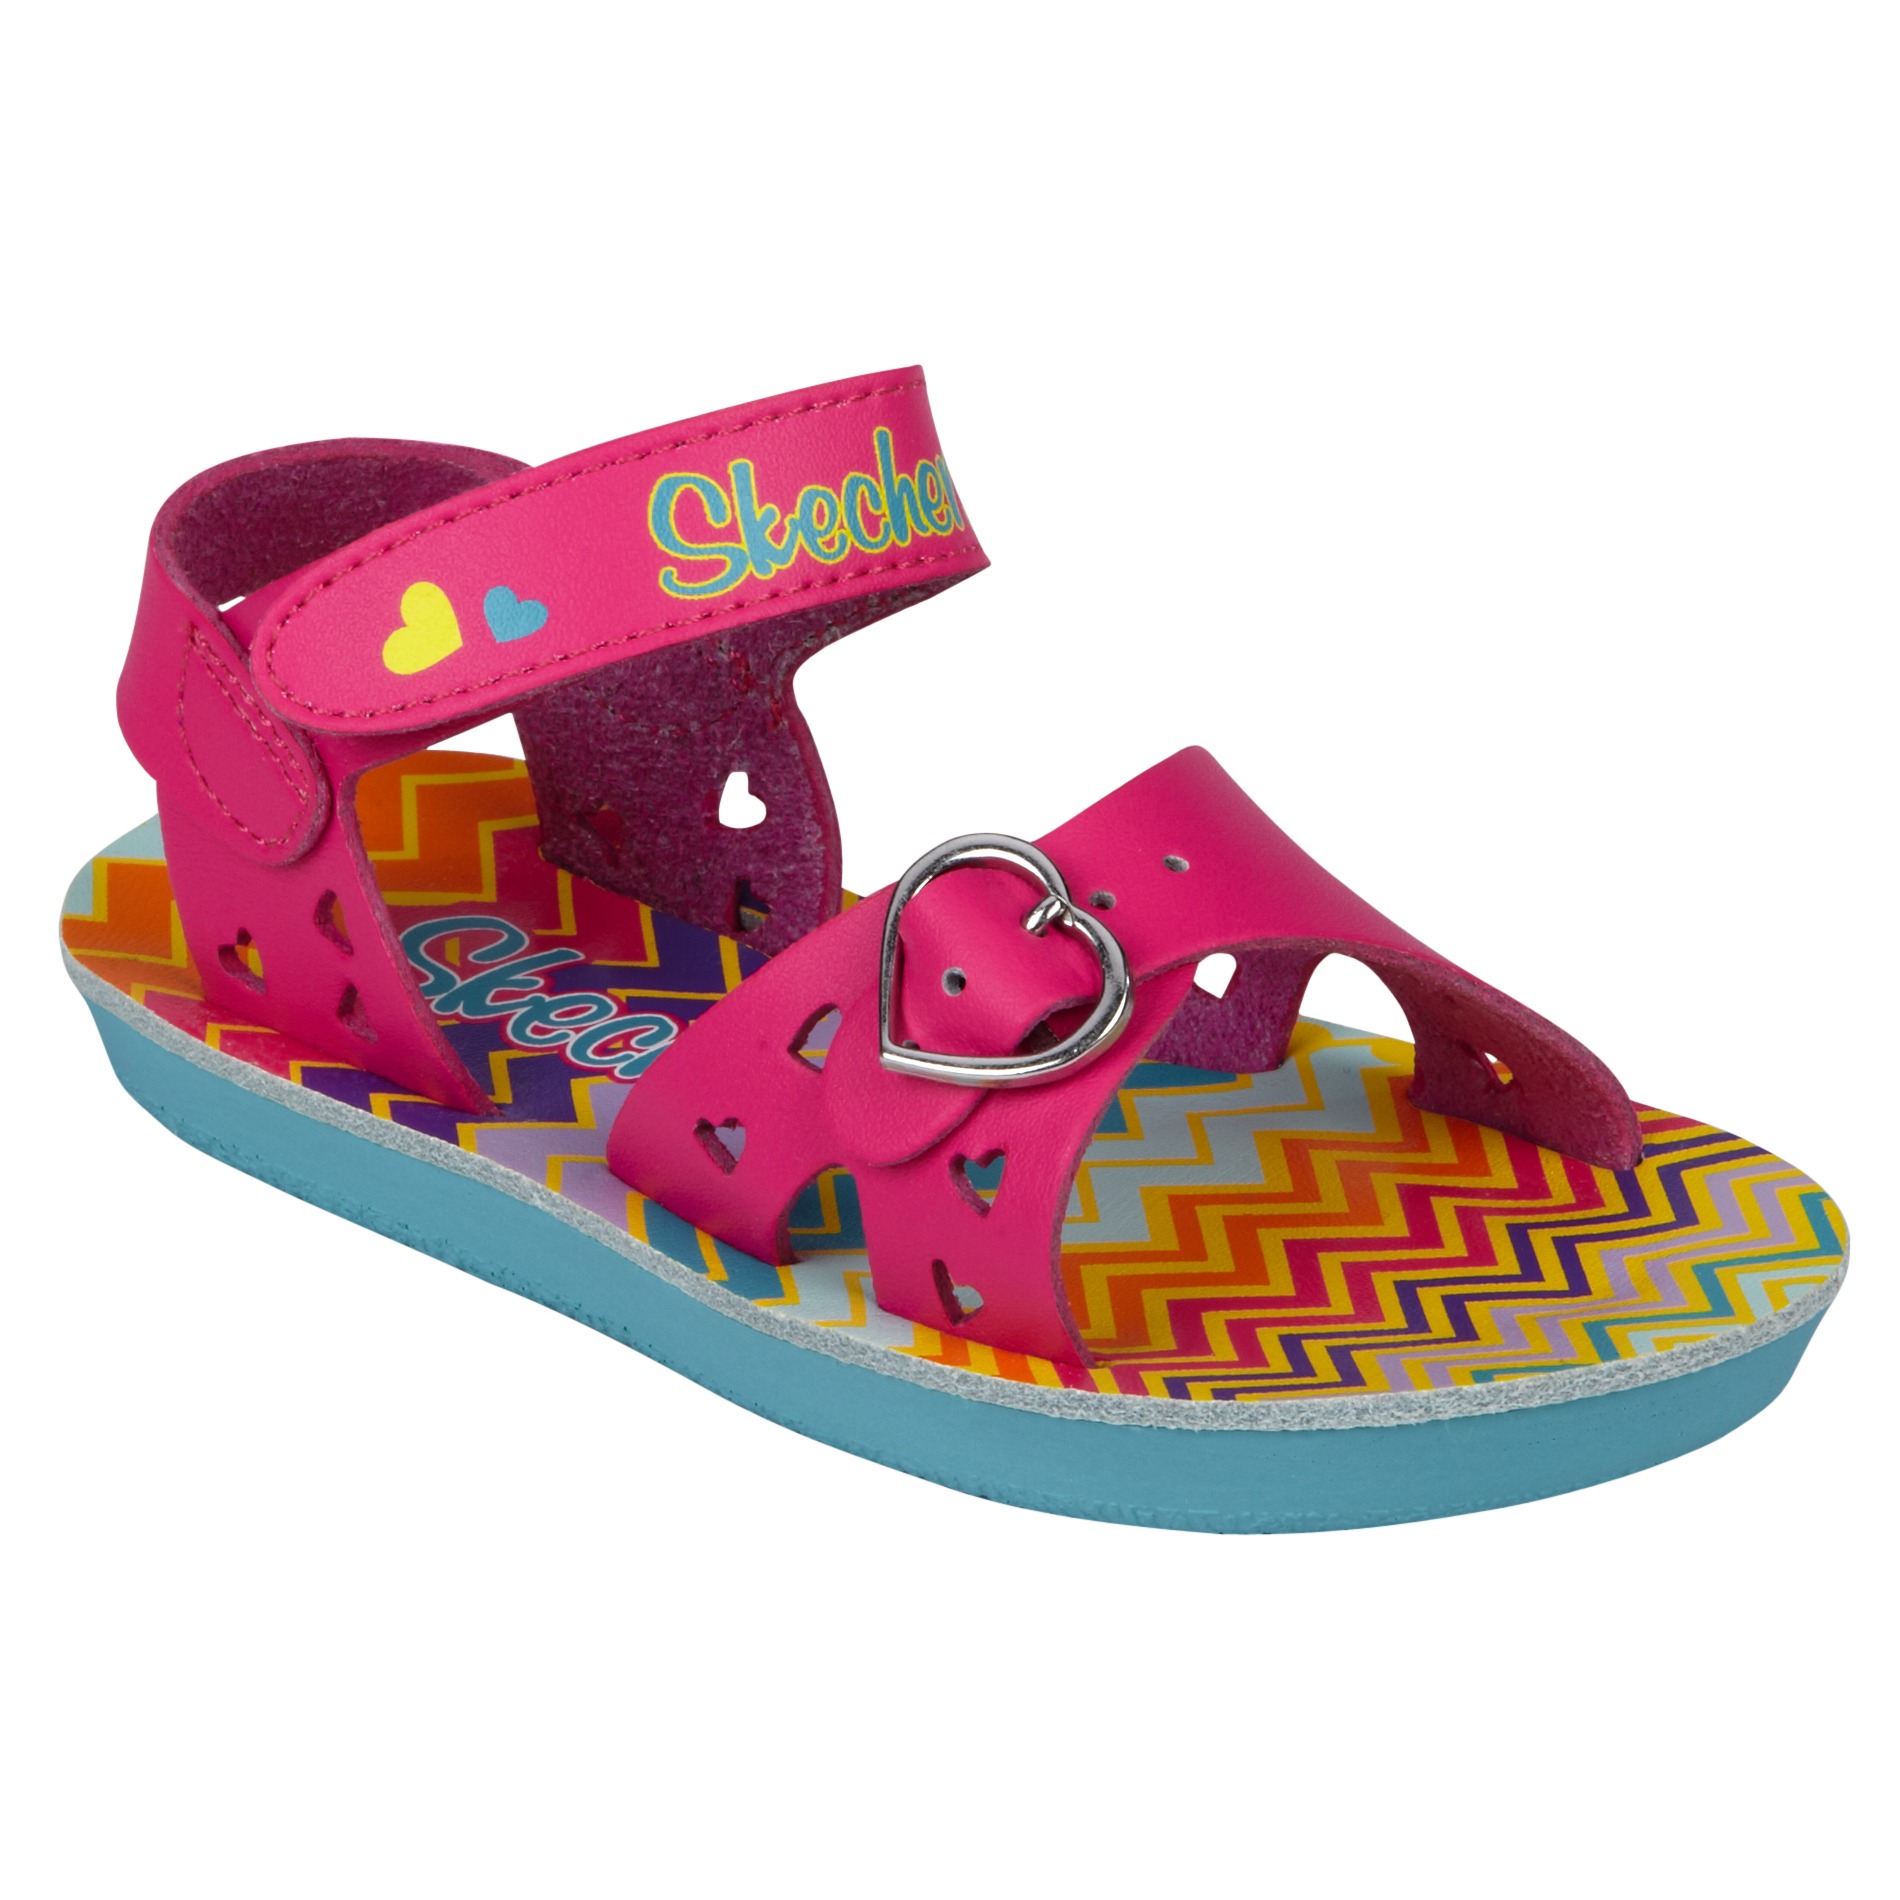 Skechers Toddler Girl's Buttercups Pink Sandal